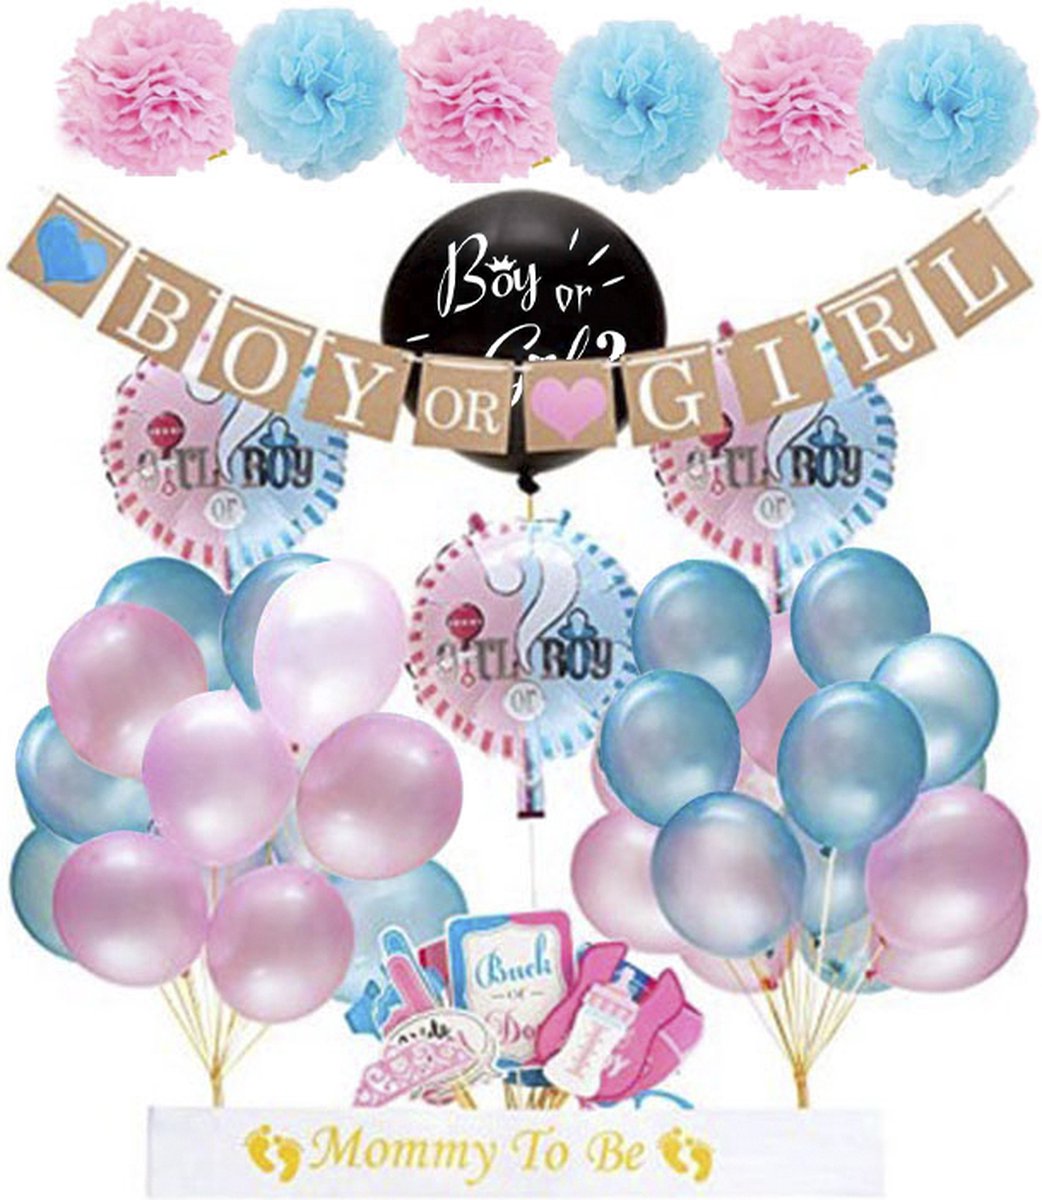 Nos ballons pour baby shower ou gender reveal sont disponibles